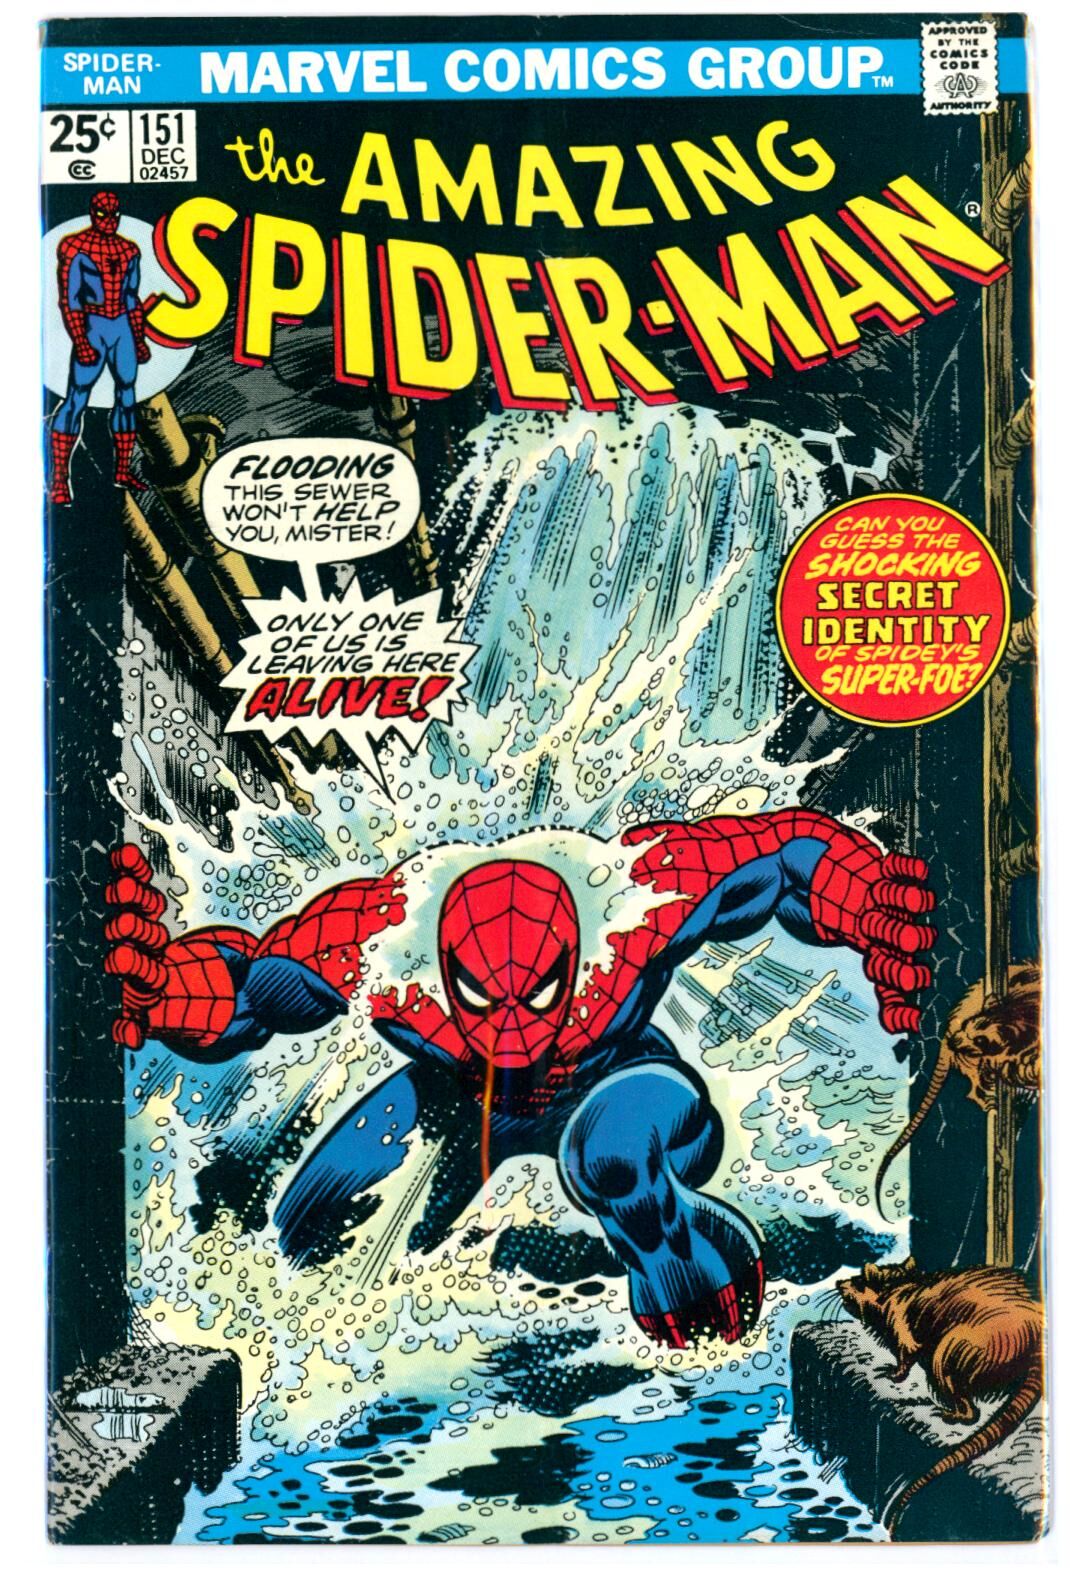 Amazing Spider-Man #151